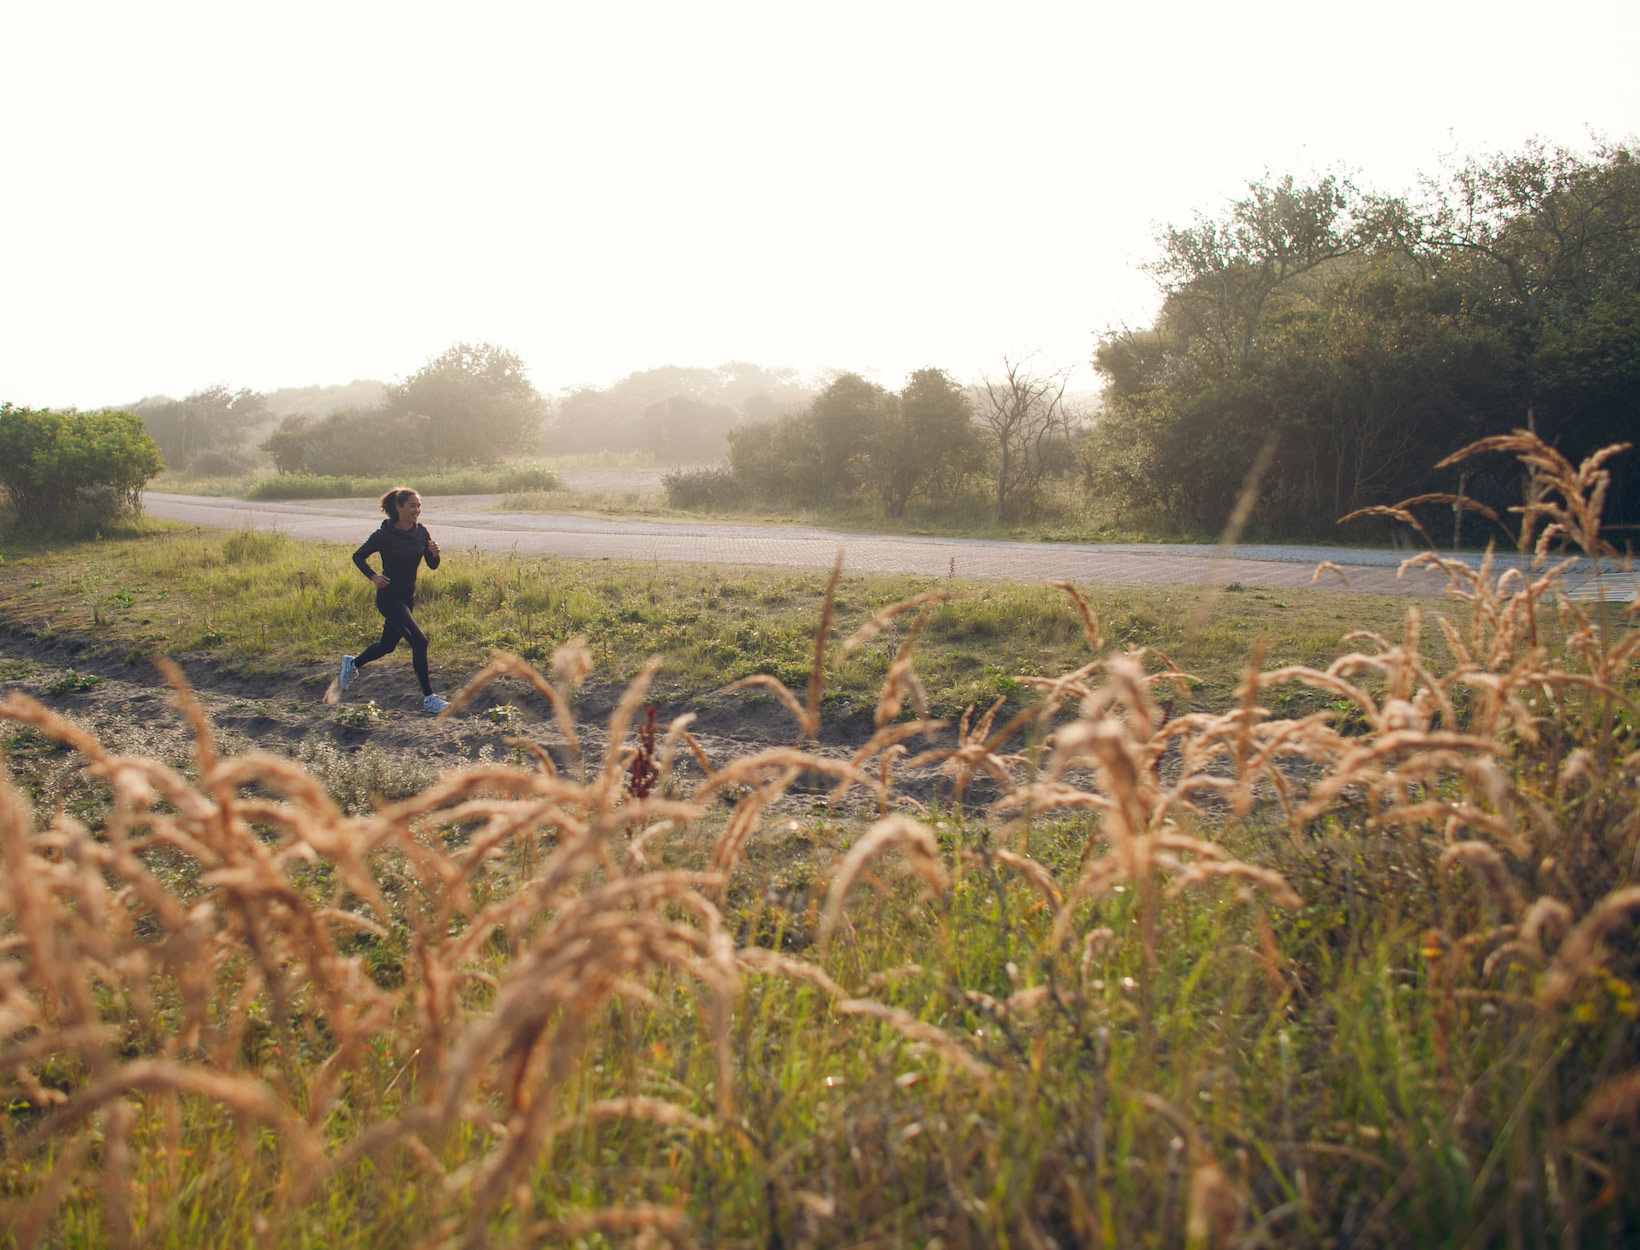 A woman running outdoors